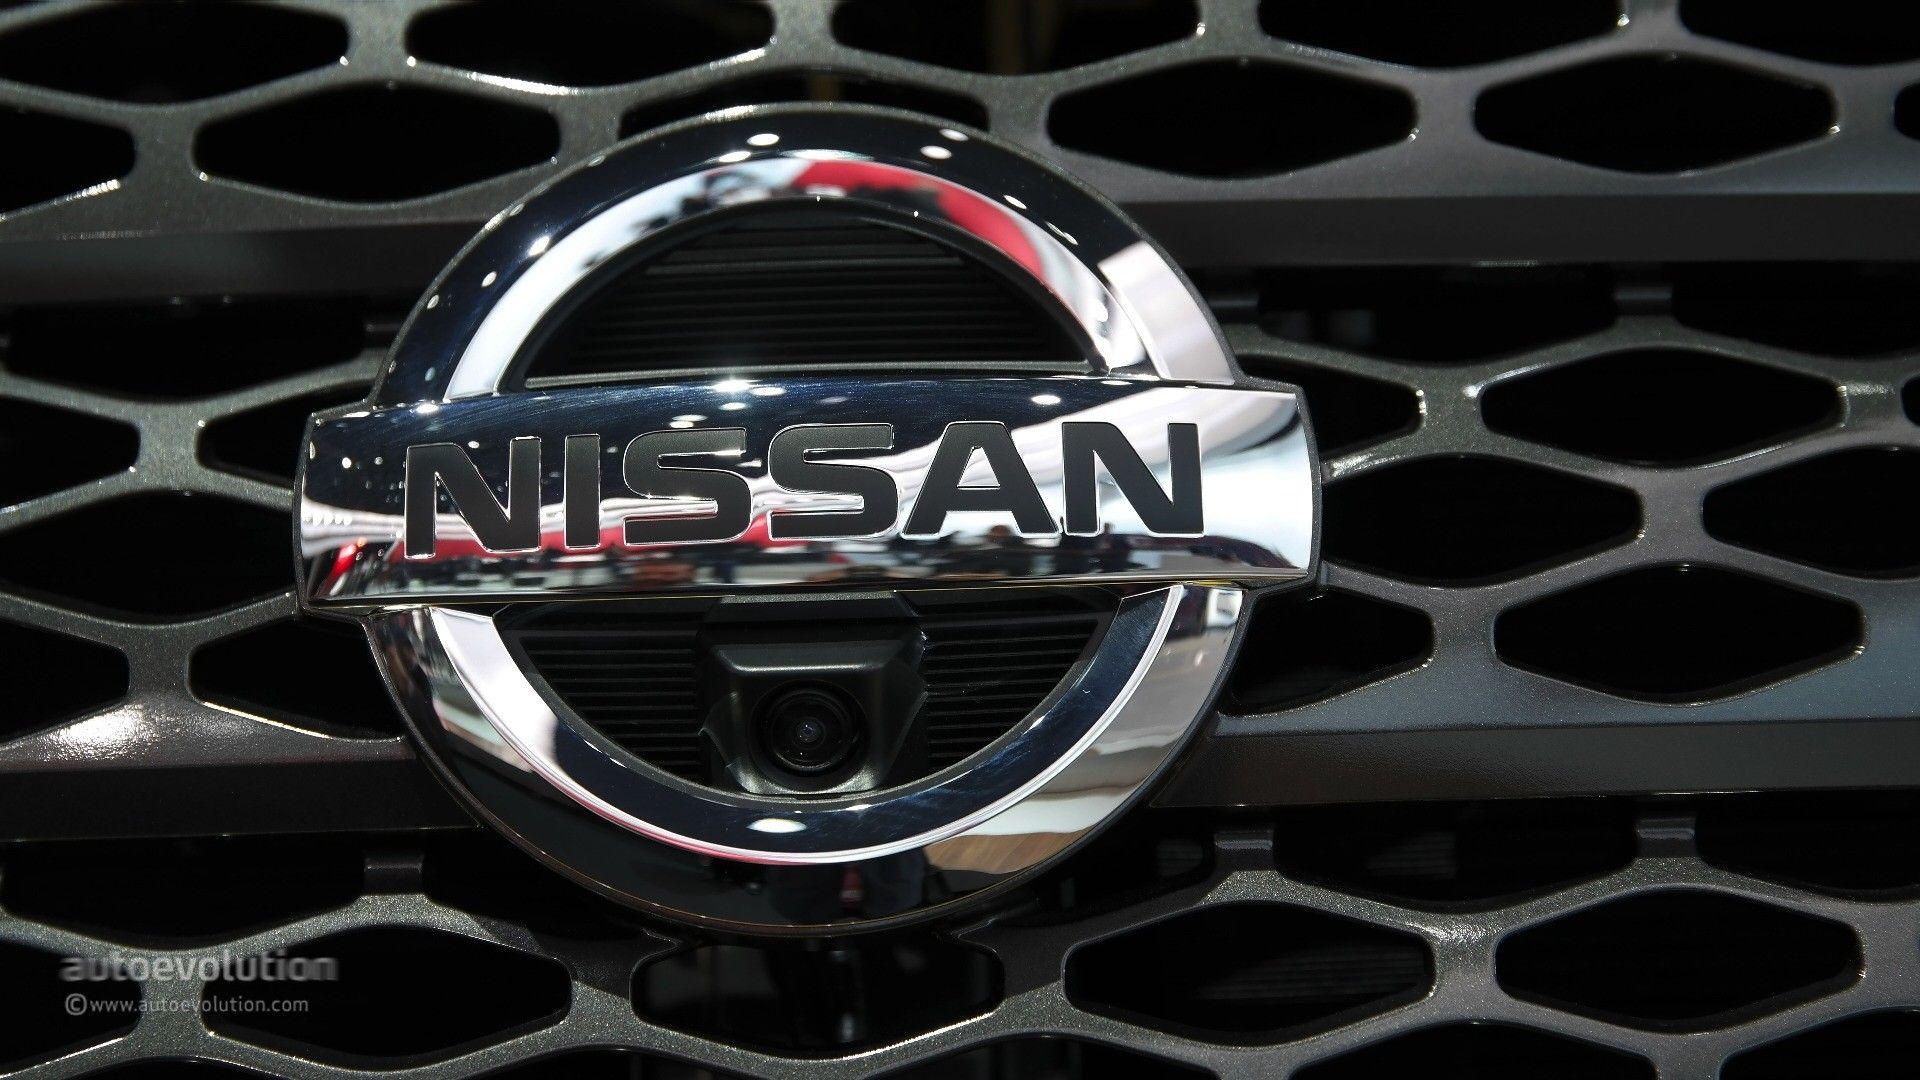 Nissan Titan Logo - 2016 Nissan Titan Logo Unveiled - autoevolution